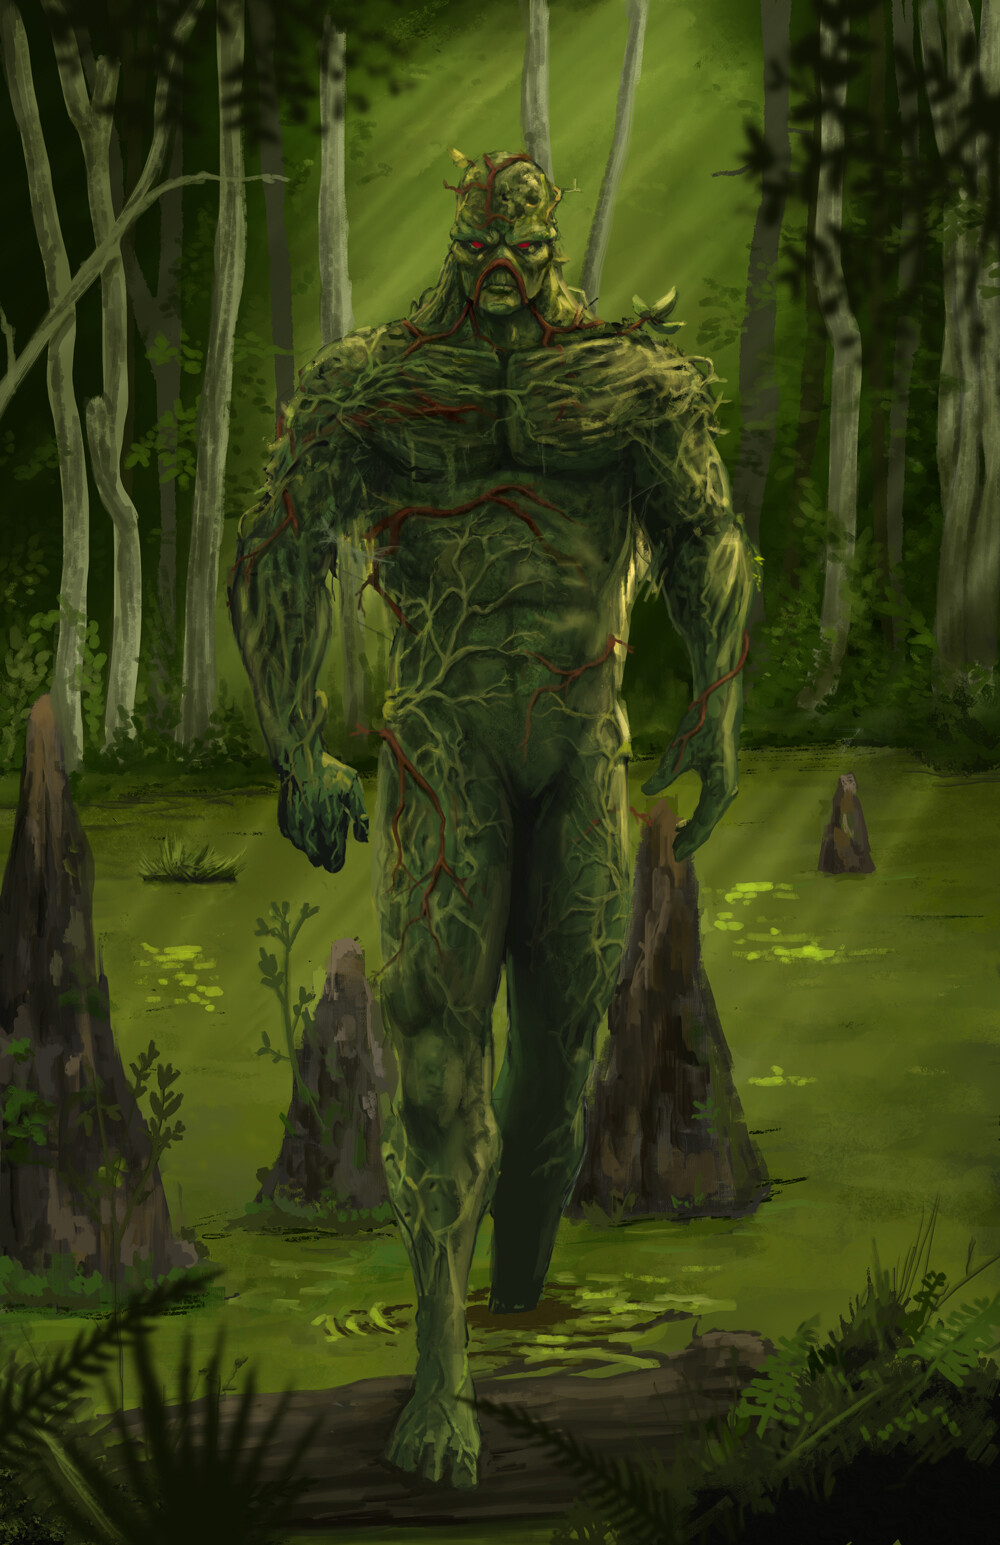 Swamp Thing